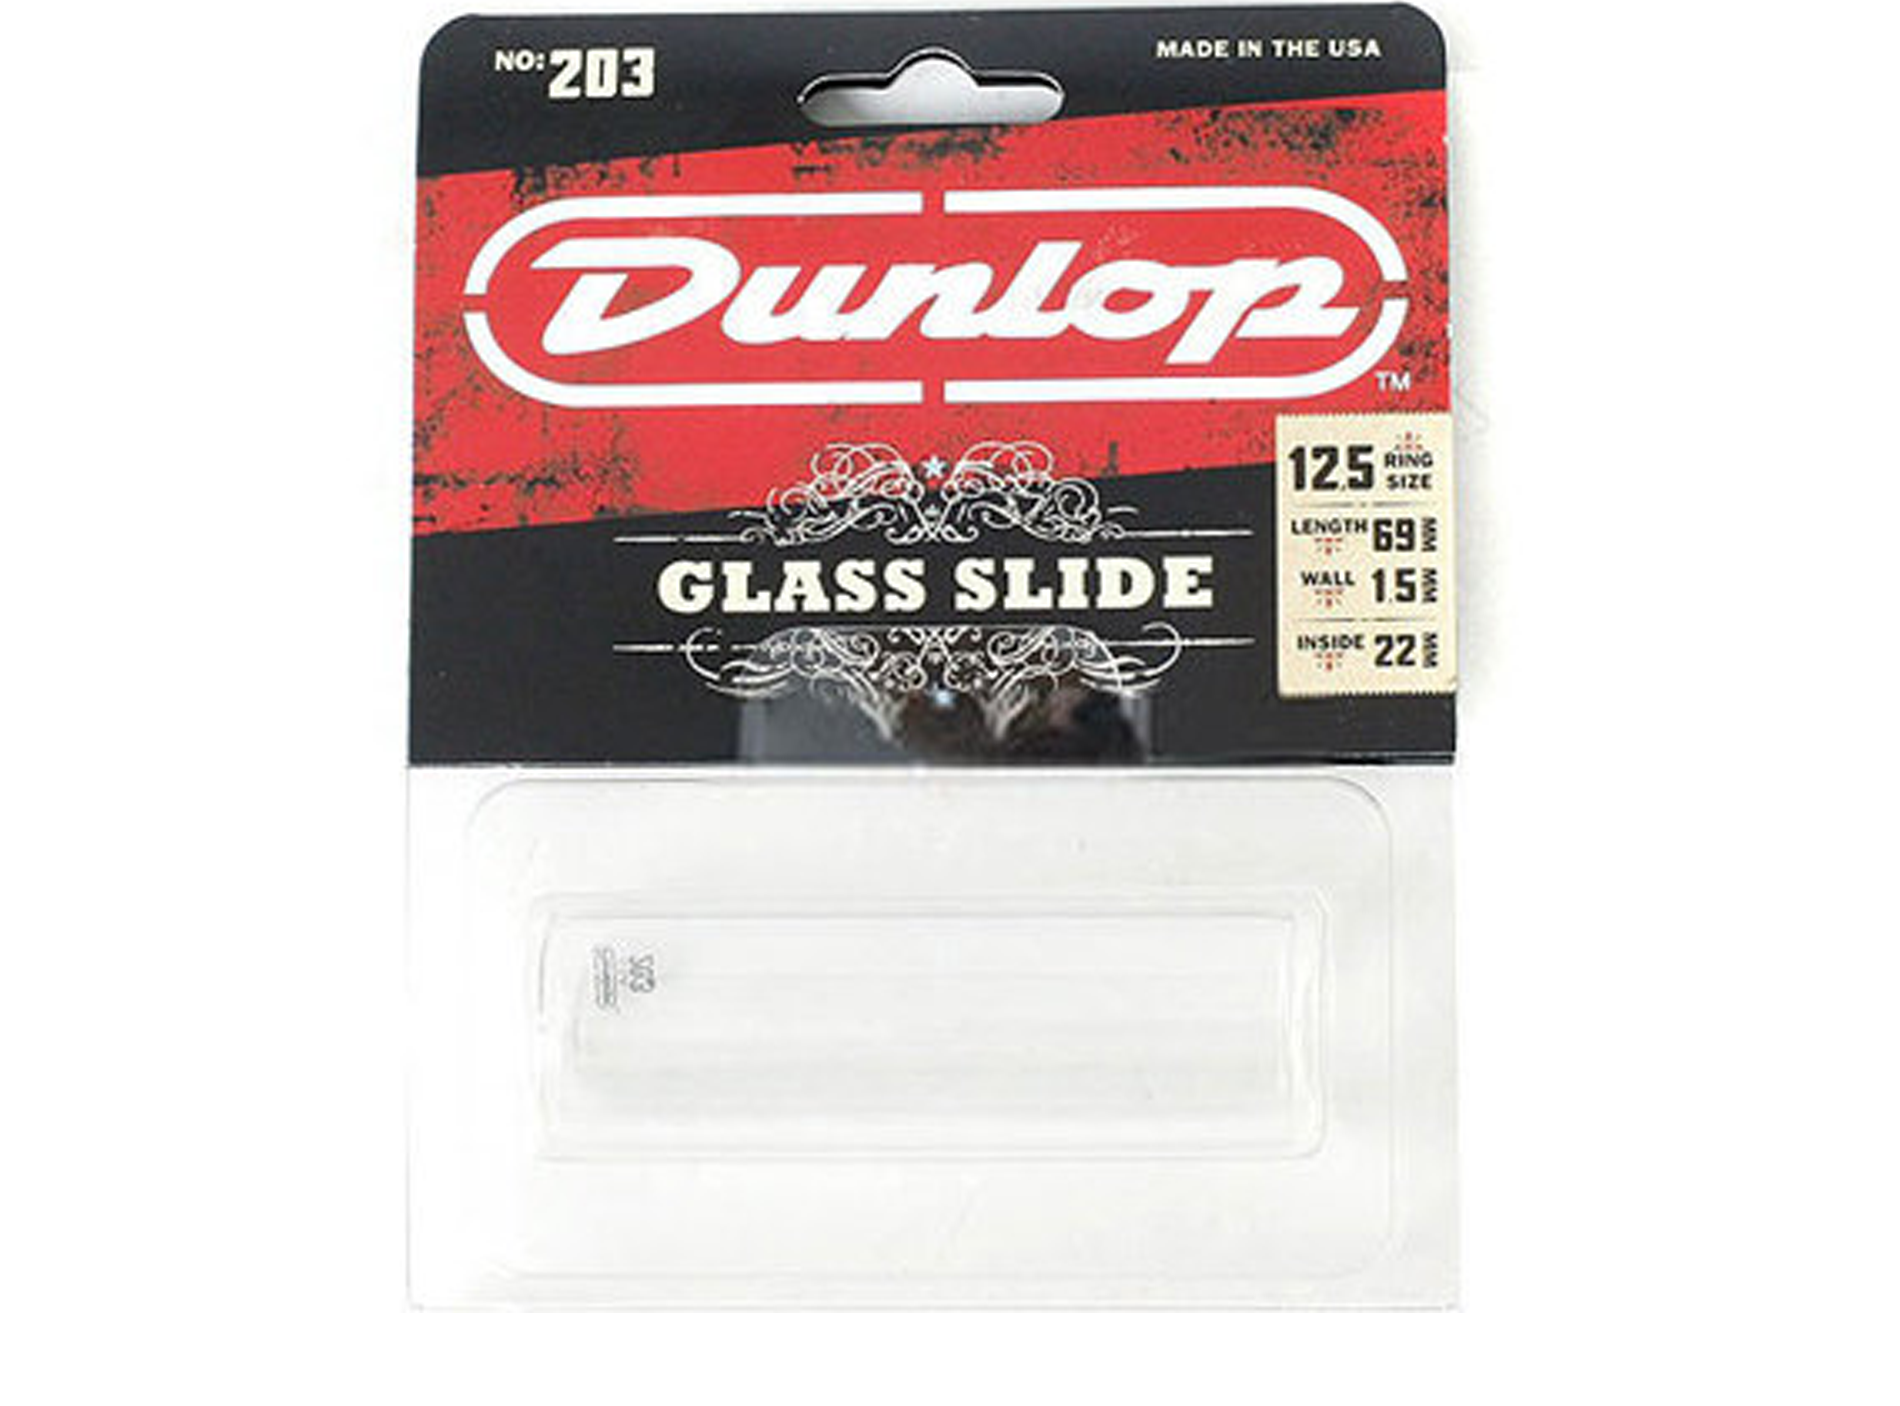 Jim Dunlop Verre Large 203 Tempered Glass Slide - Slide - Main picture